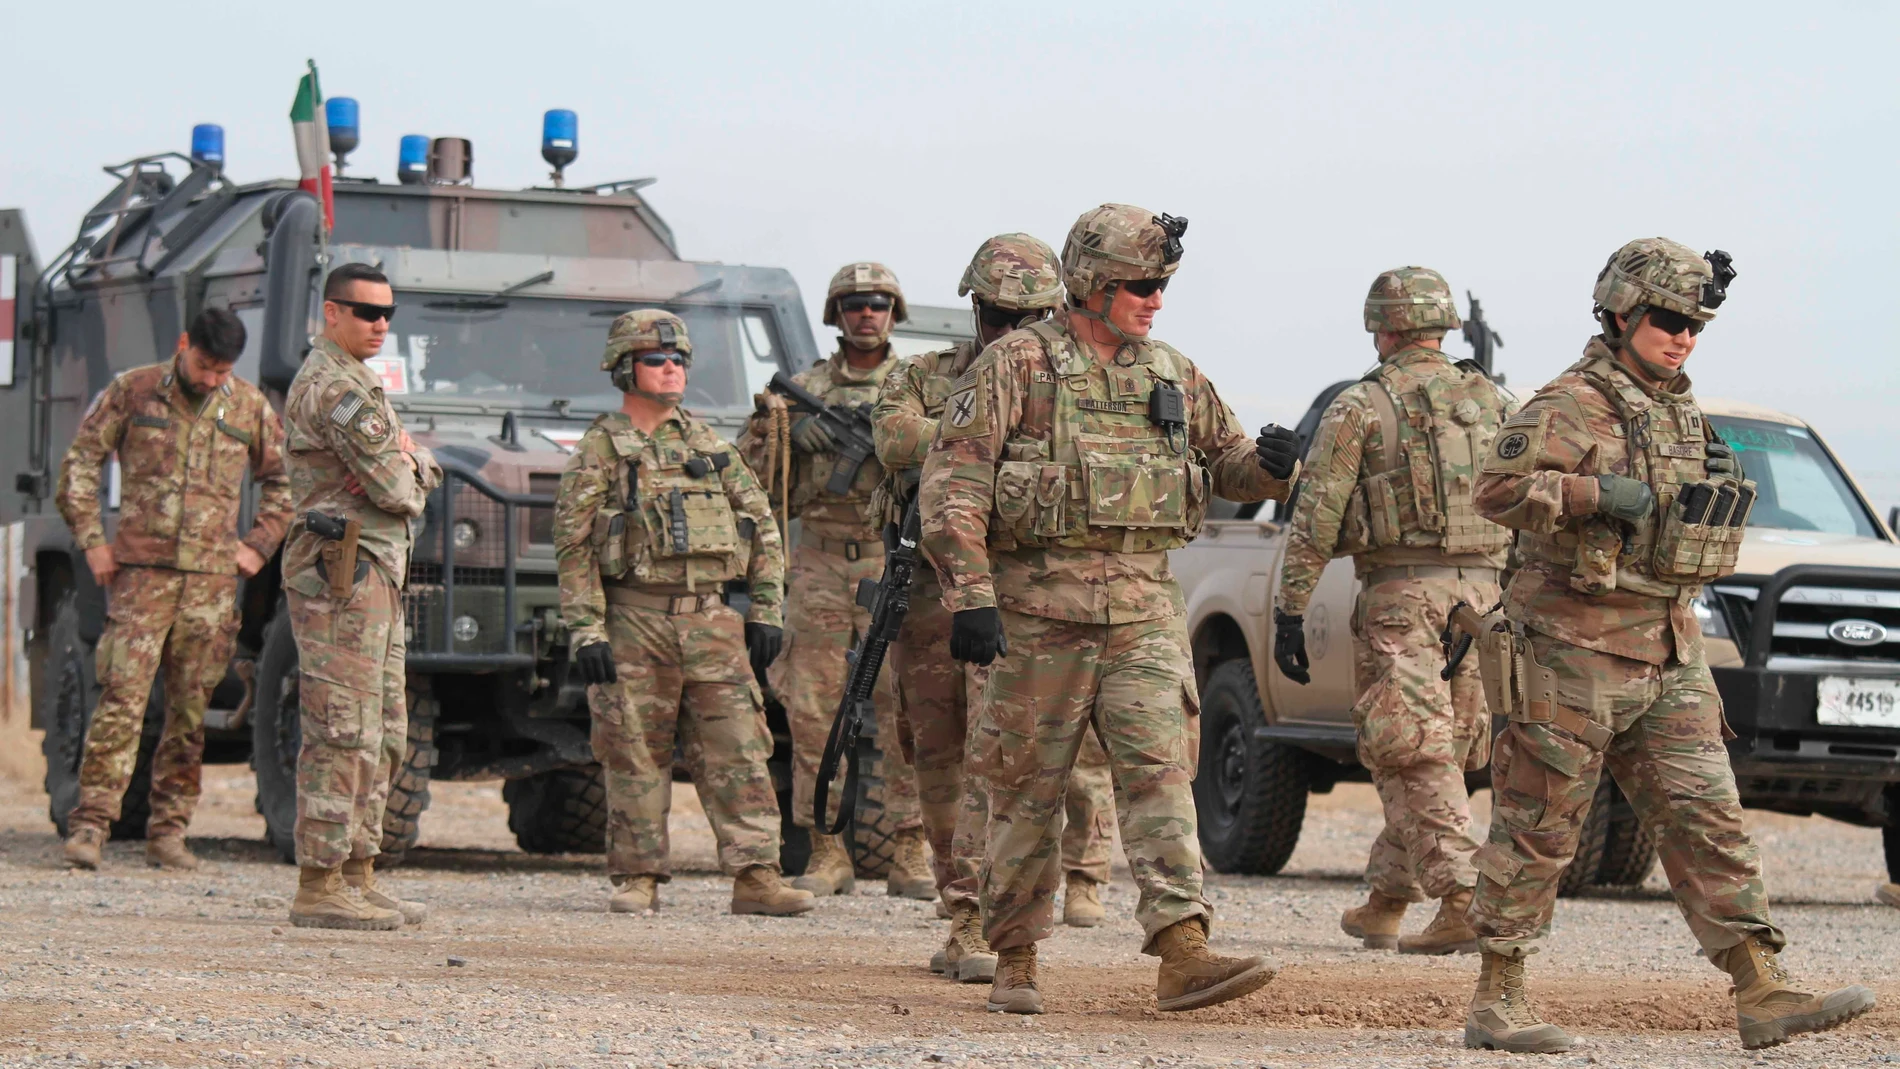 Vista de soldados estadounidenses en labores de seguridad en Afganistán.